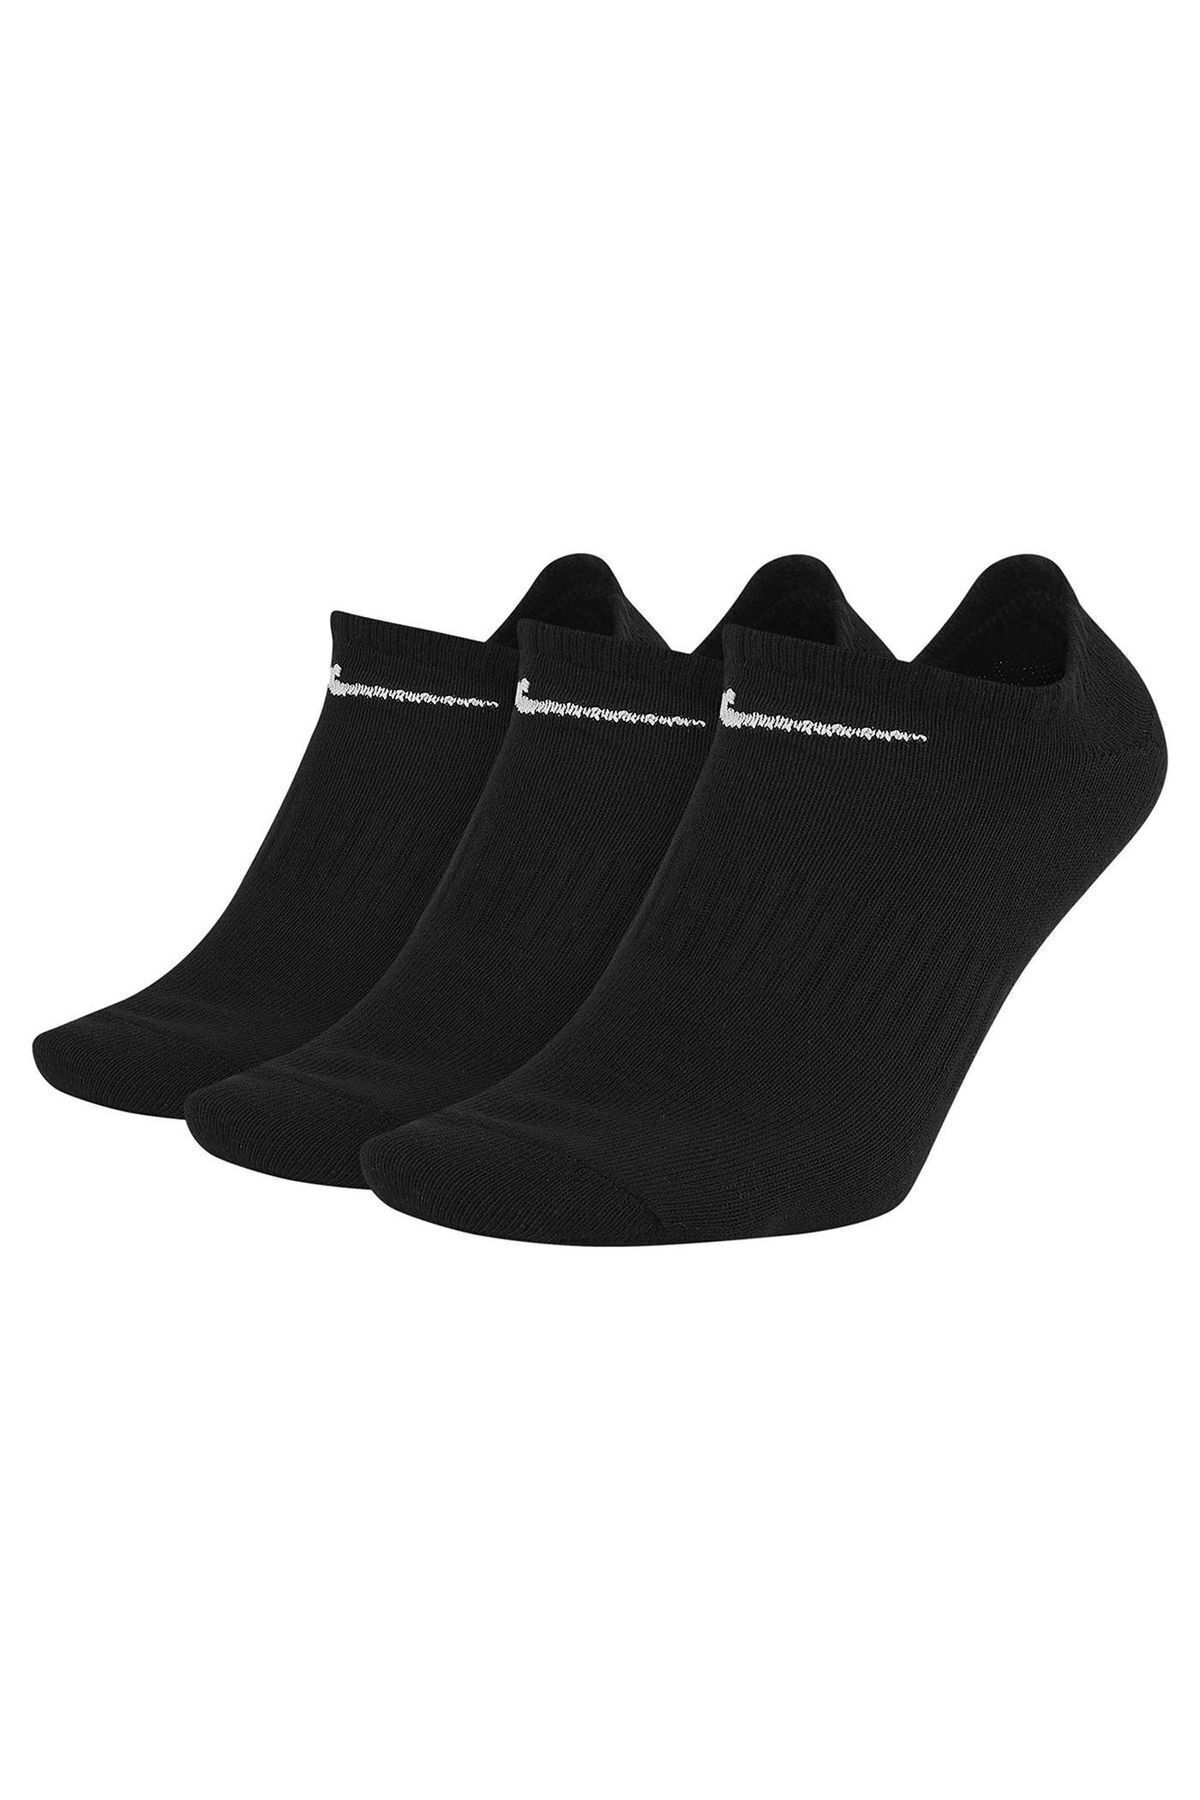 Nike Unisex Siyah 3'lü Çorap Seti SX7678-010 Everyday Lightweight